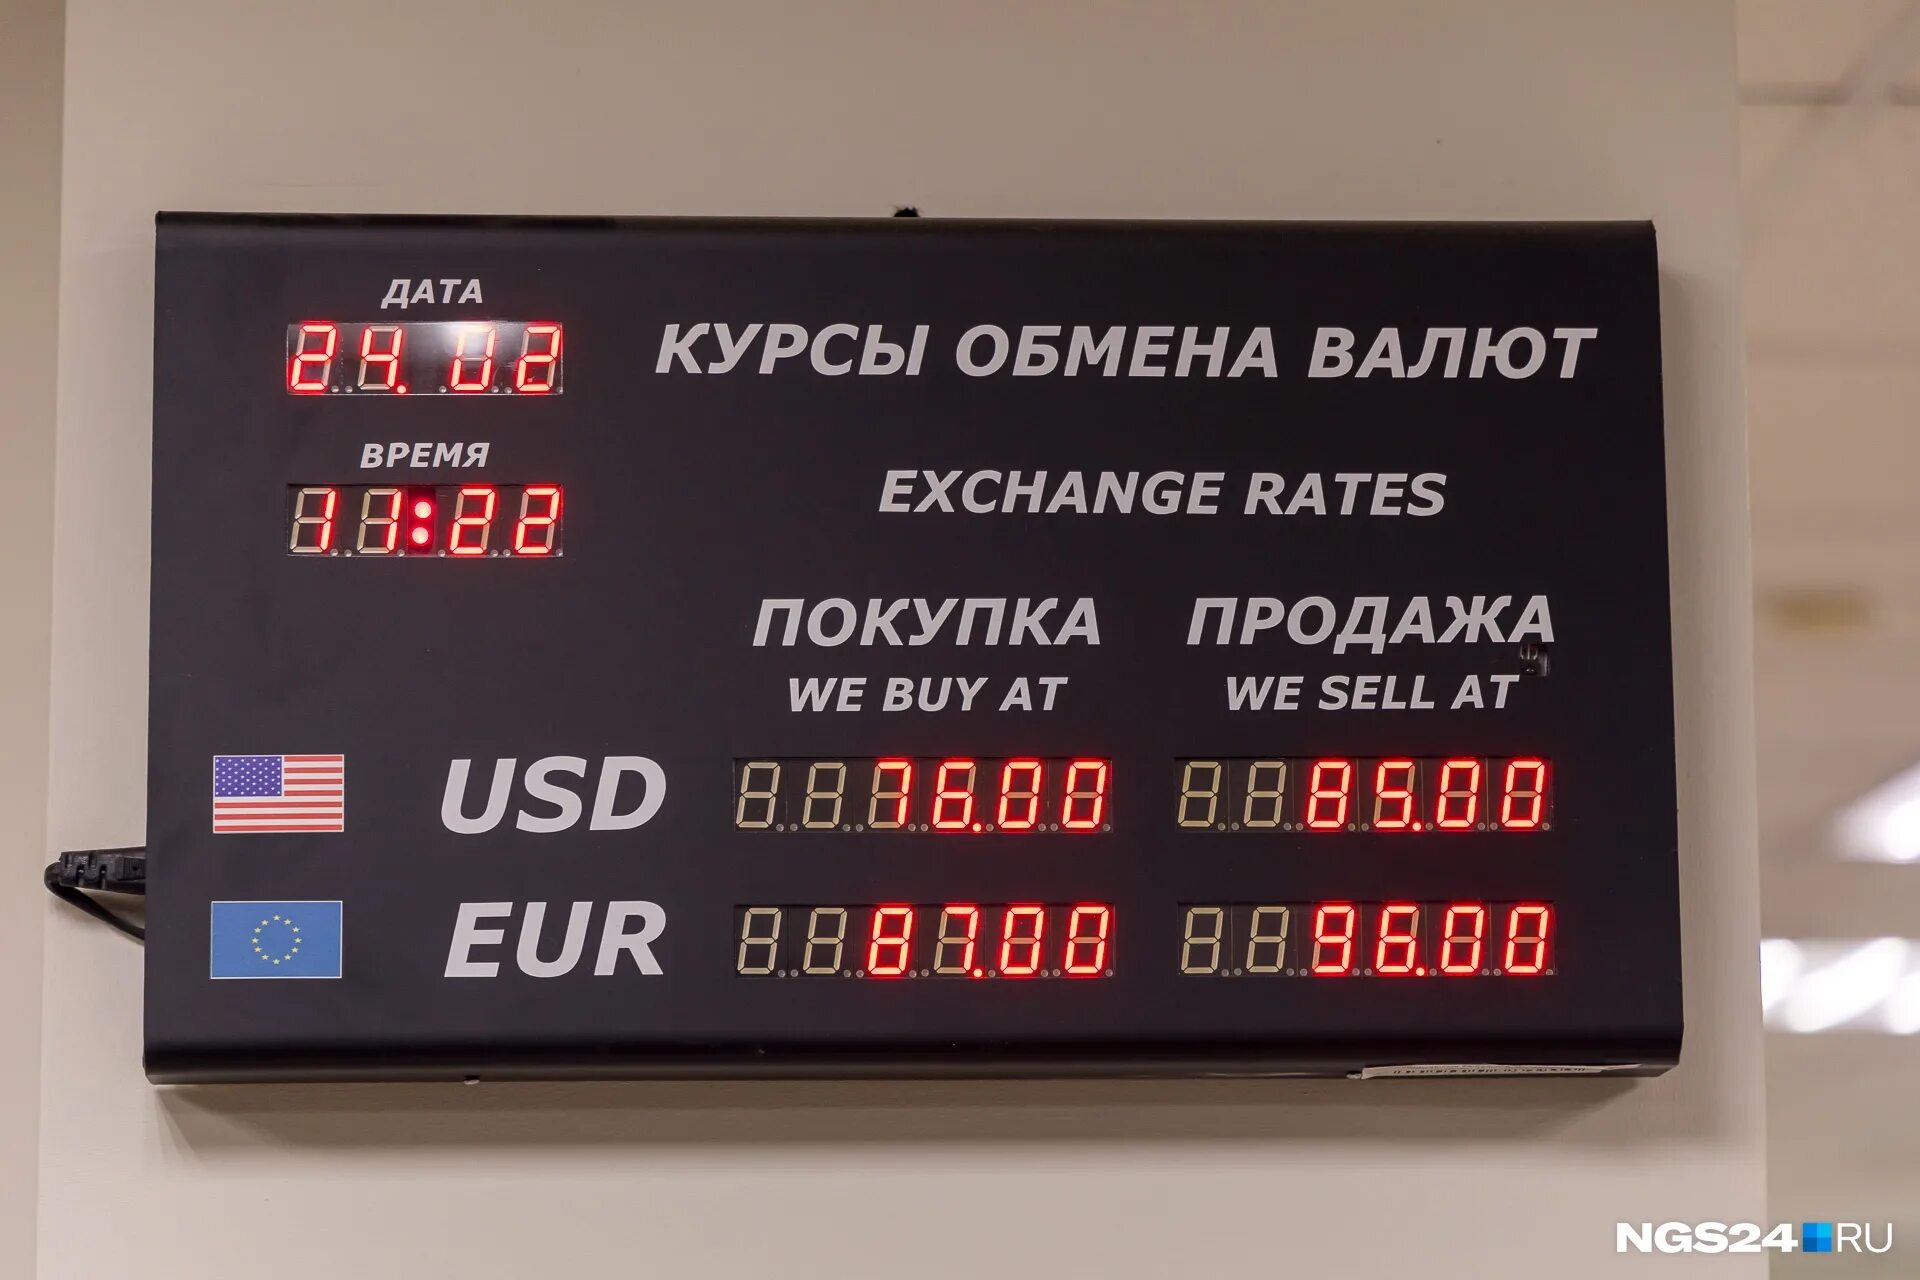 Обменный курс драма. Обменник валют. Курсы обмена валют. Обменные курсы валют. Размен валюты.